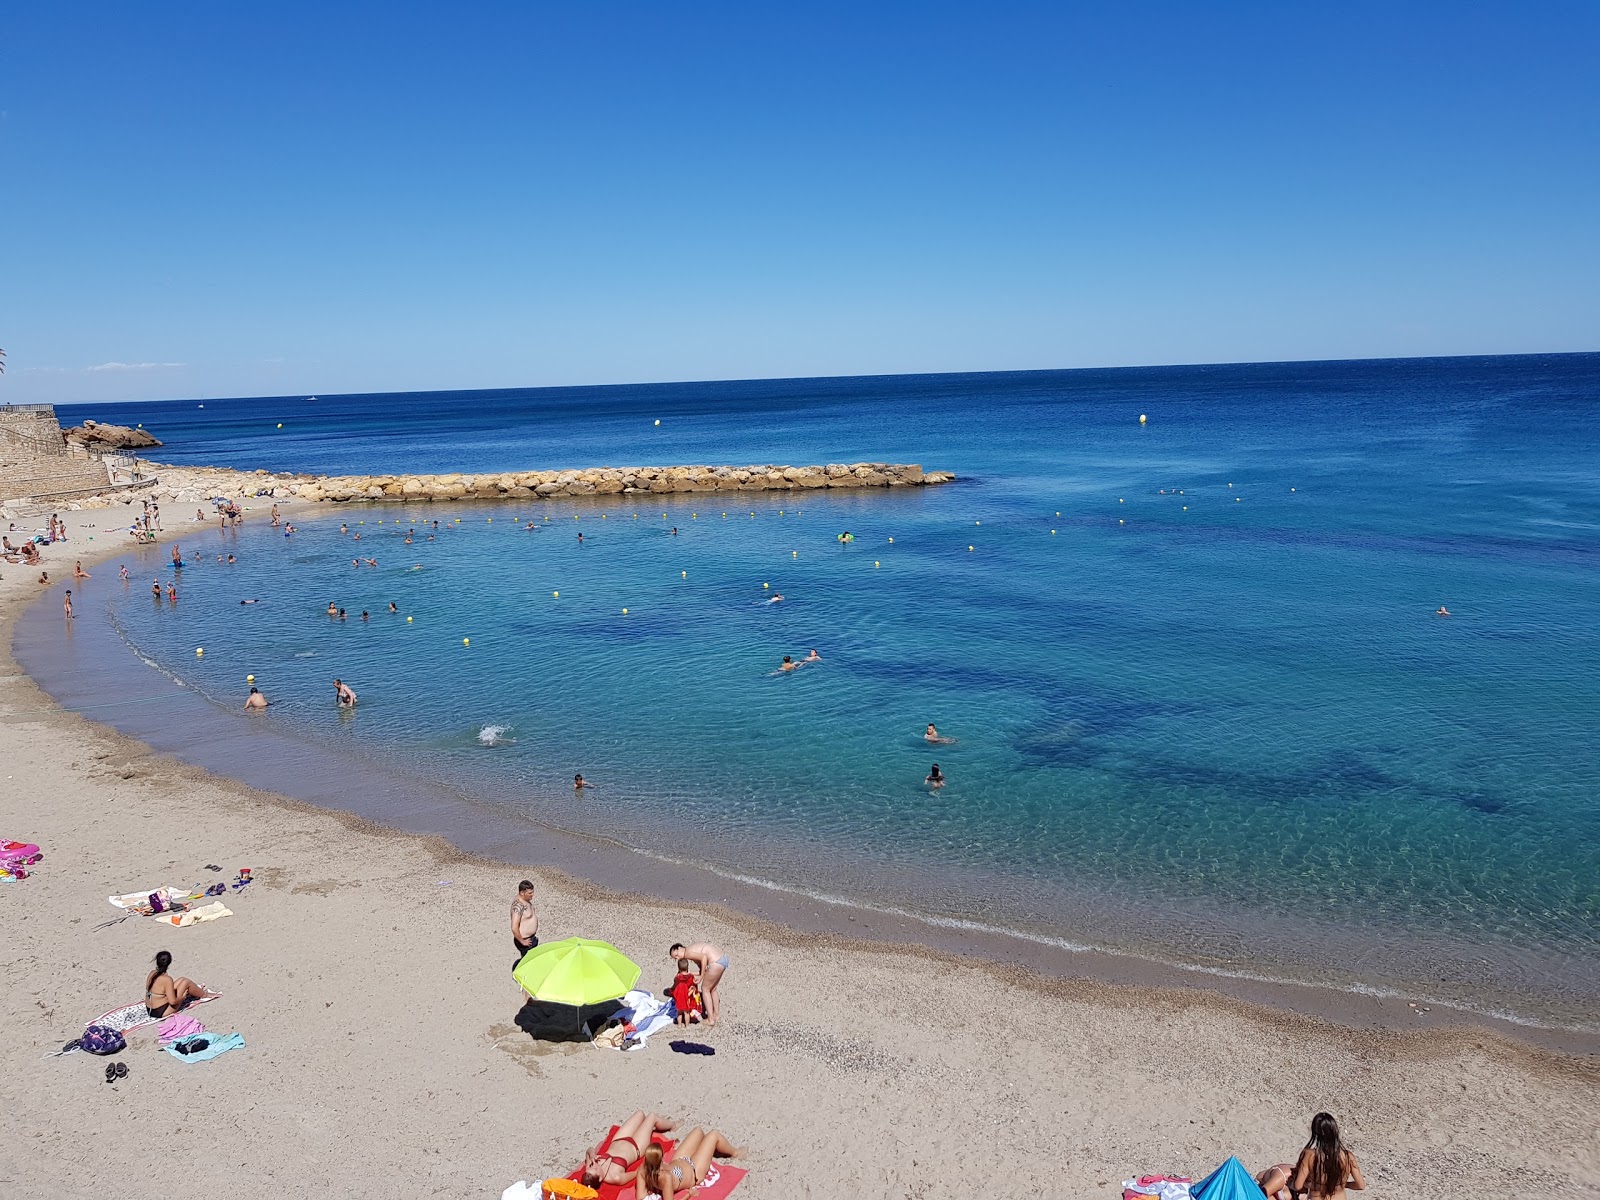 Platja De l'Alguer'in fotoğrafı i̇nce kahverengi kum yüzey ile